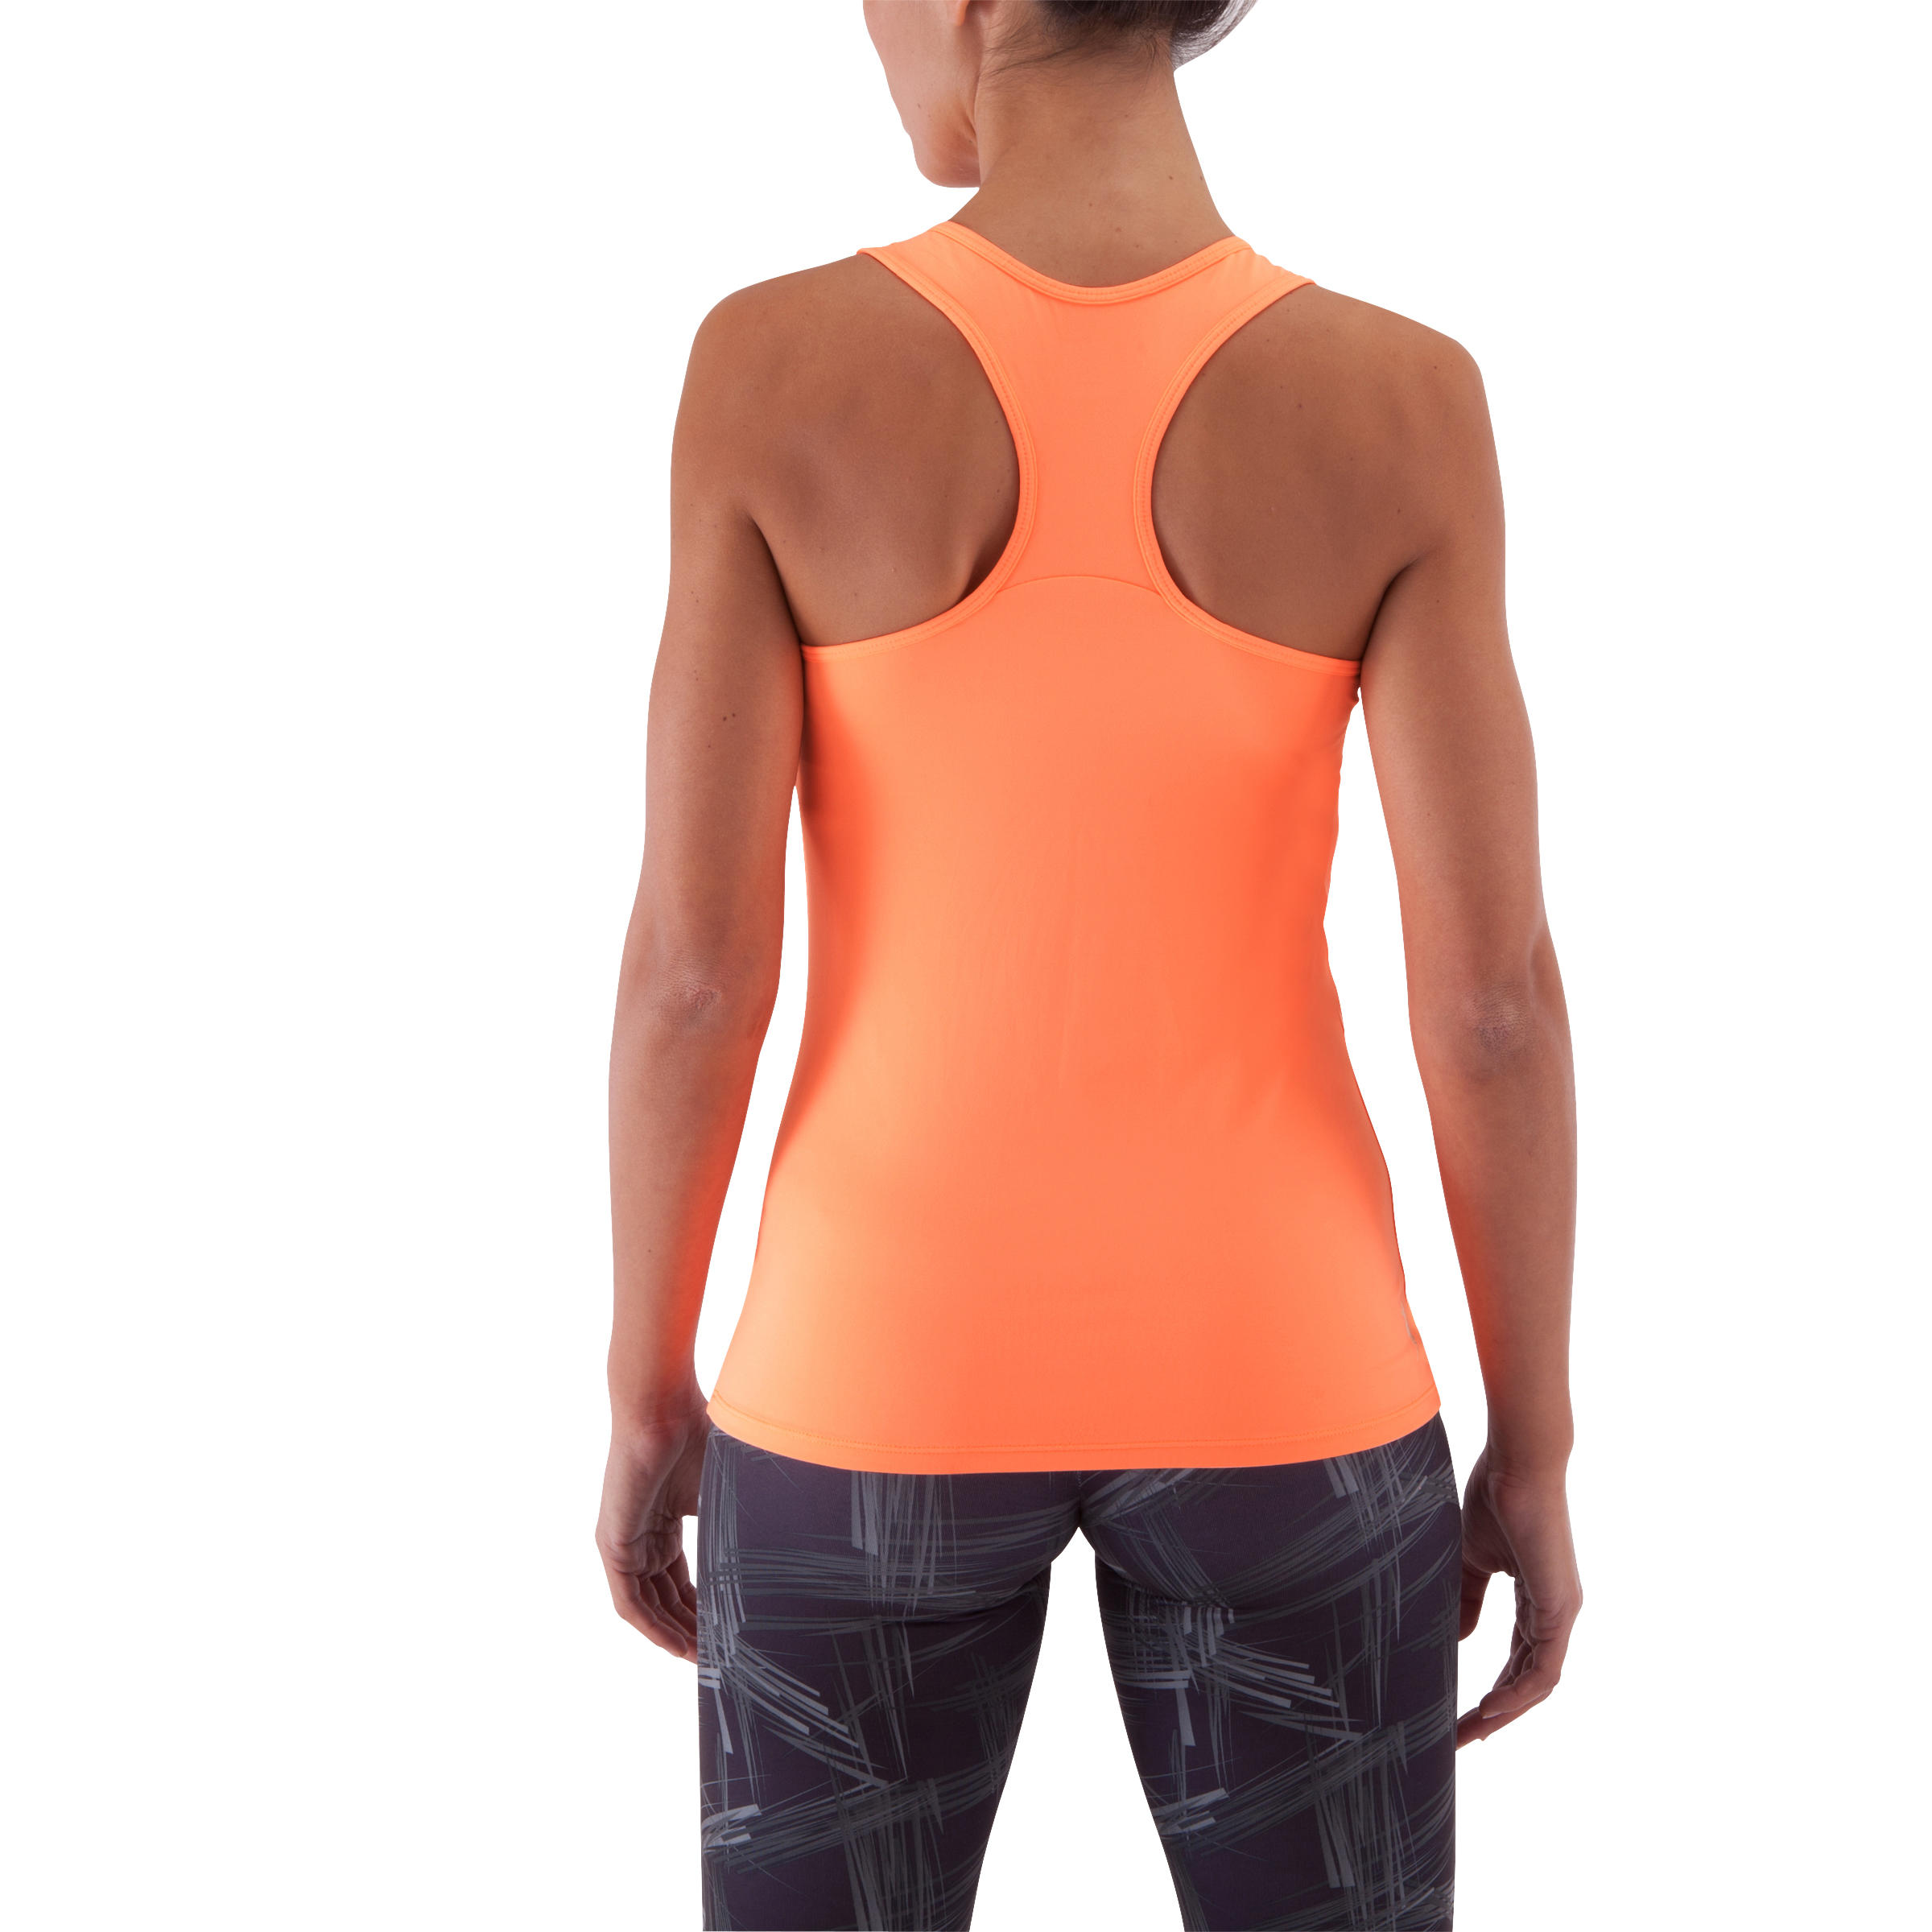 Energy My Top Women's Fitness Tank Top - Neon Orange 4/13